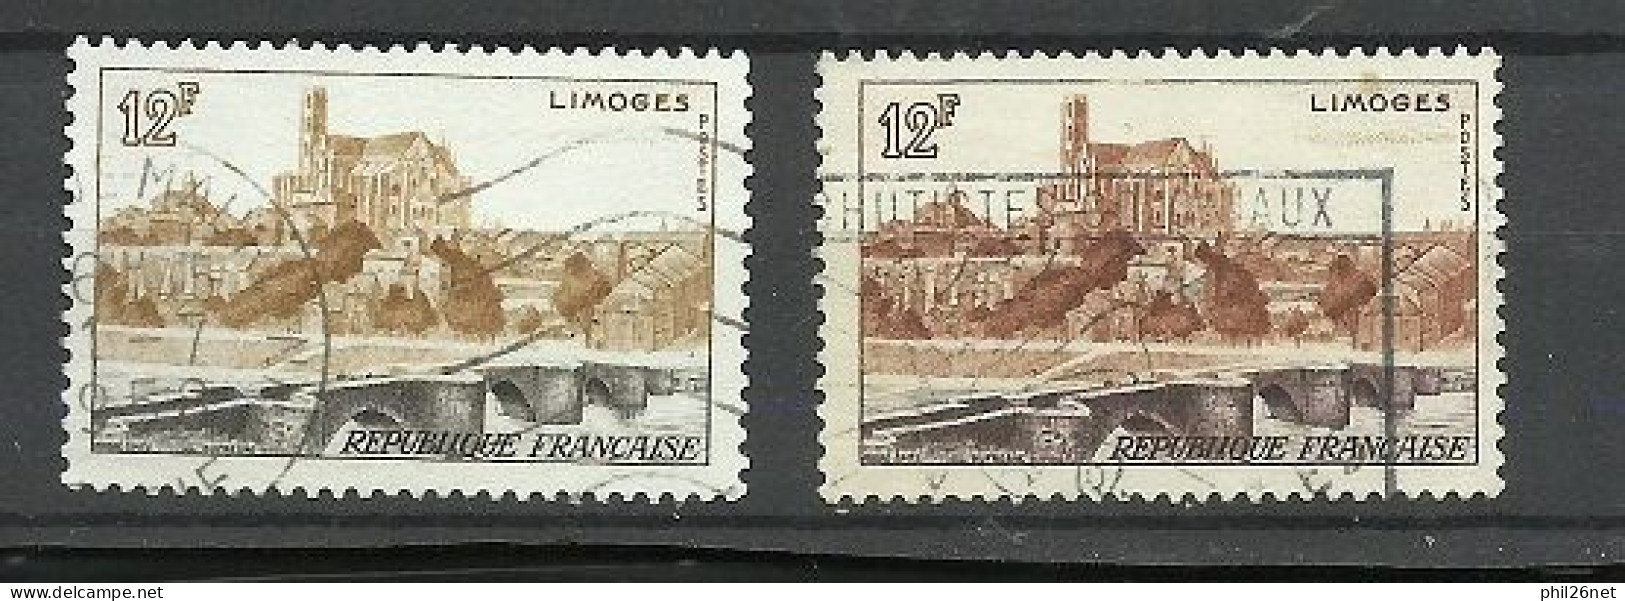 France  N° 1019  Limoges Ocre Et  Gris Oblitéré   B/TB Le  Timbre Type Sur Les Scans Pour Comparer Soldé ! ! ! - Used Stamps